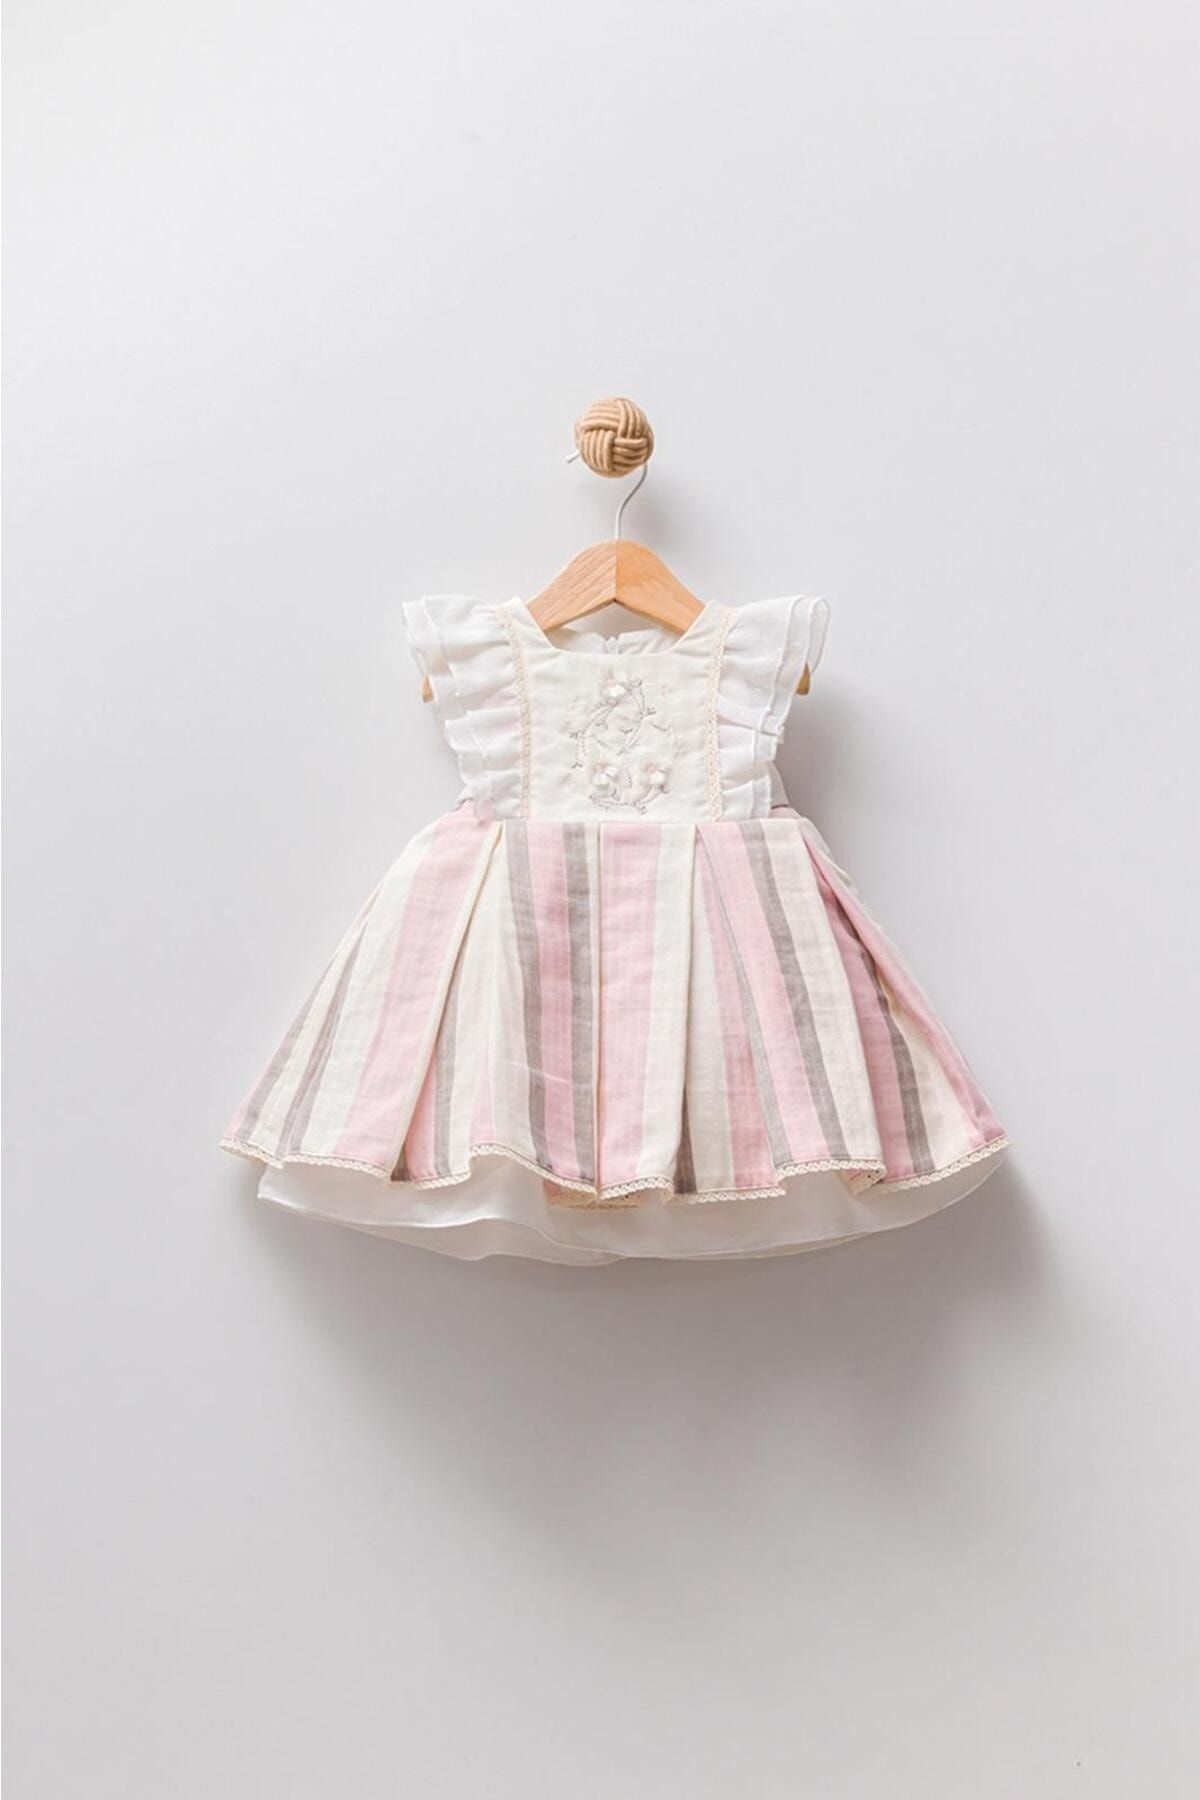 Babydola Papatya Nakışlı Pileli Bayramlık Kız Bebek Elbise 13903